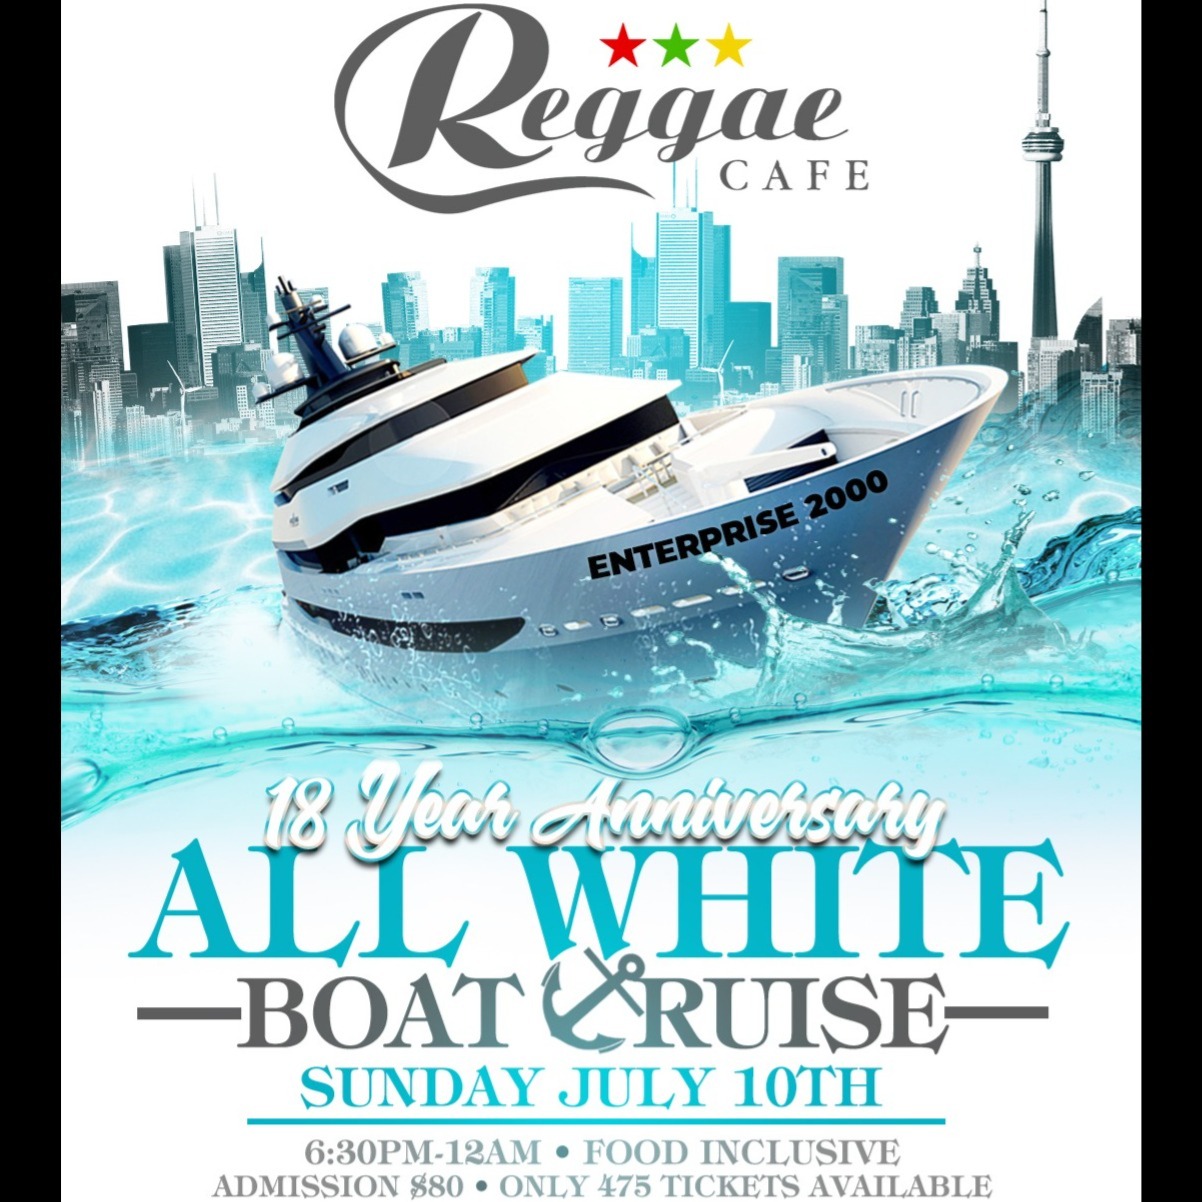 All White Boat Cruise: 18 Year Anniversary